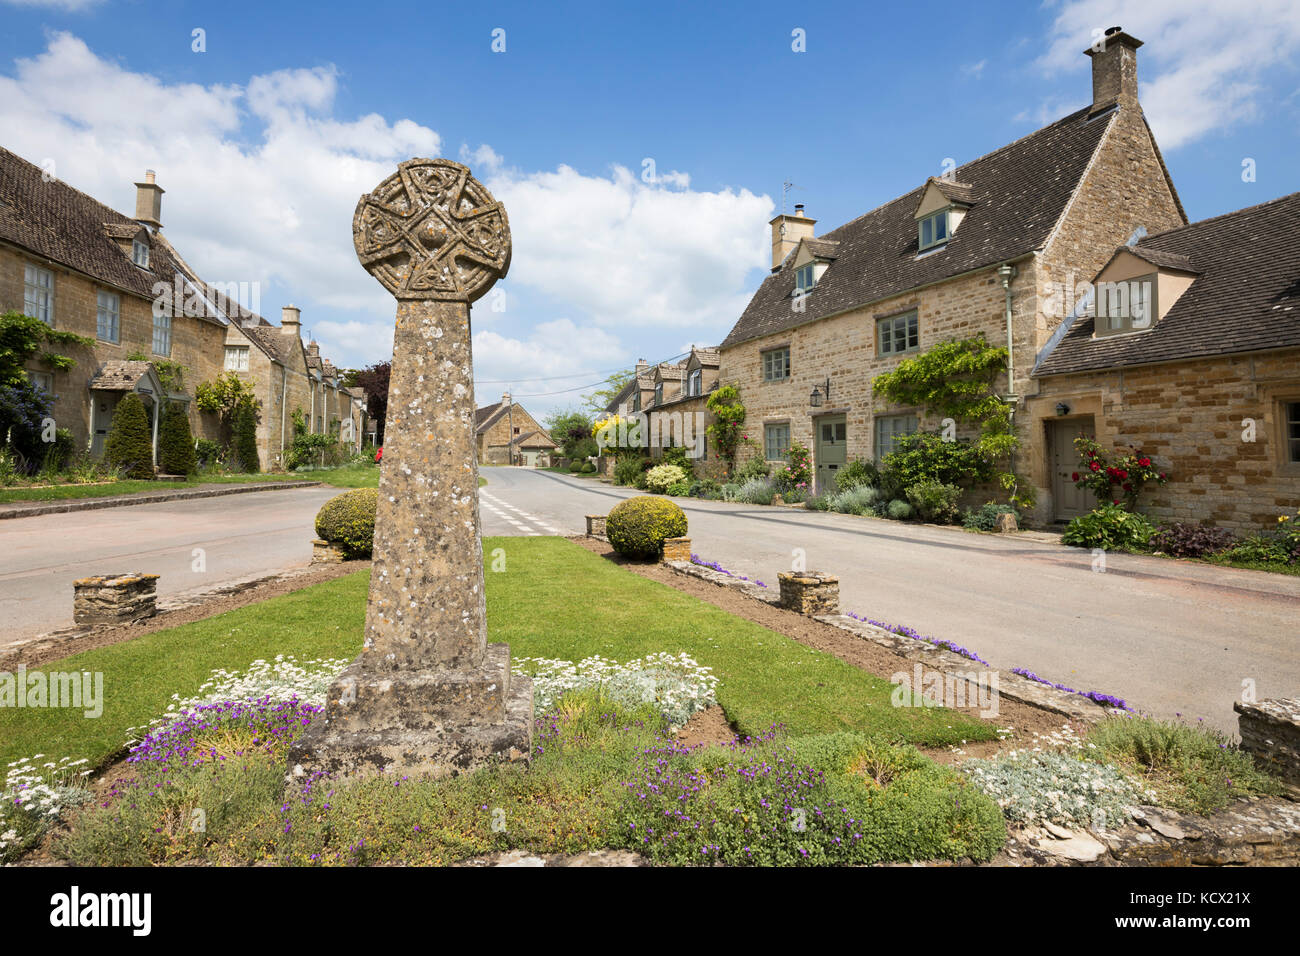 Cottages en pierre de Cotswold et croix en pierre, village Icomb Icomb, Cotswolds, Gloucestershire, Angleterre, Royaume-Uni, Europe Banque D'Images